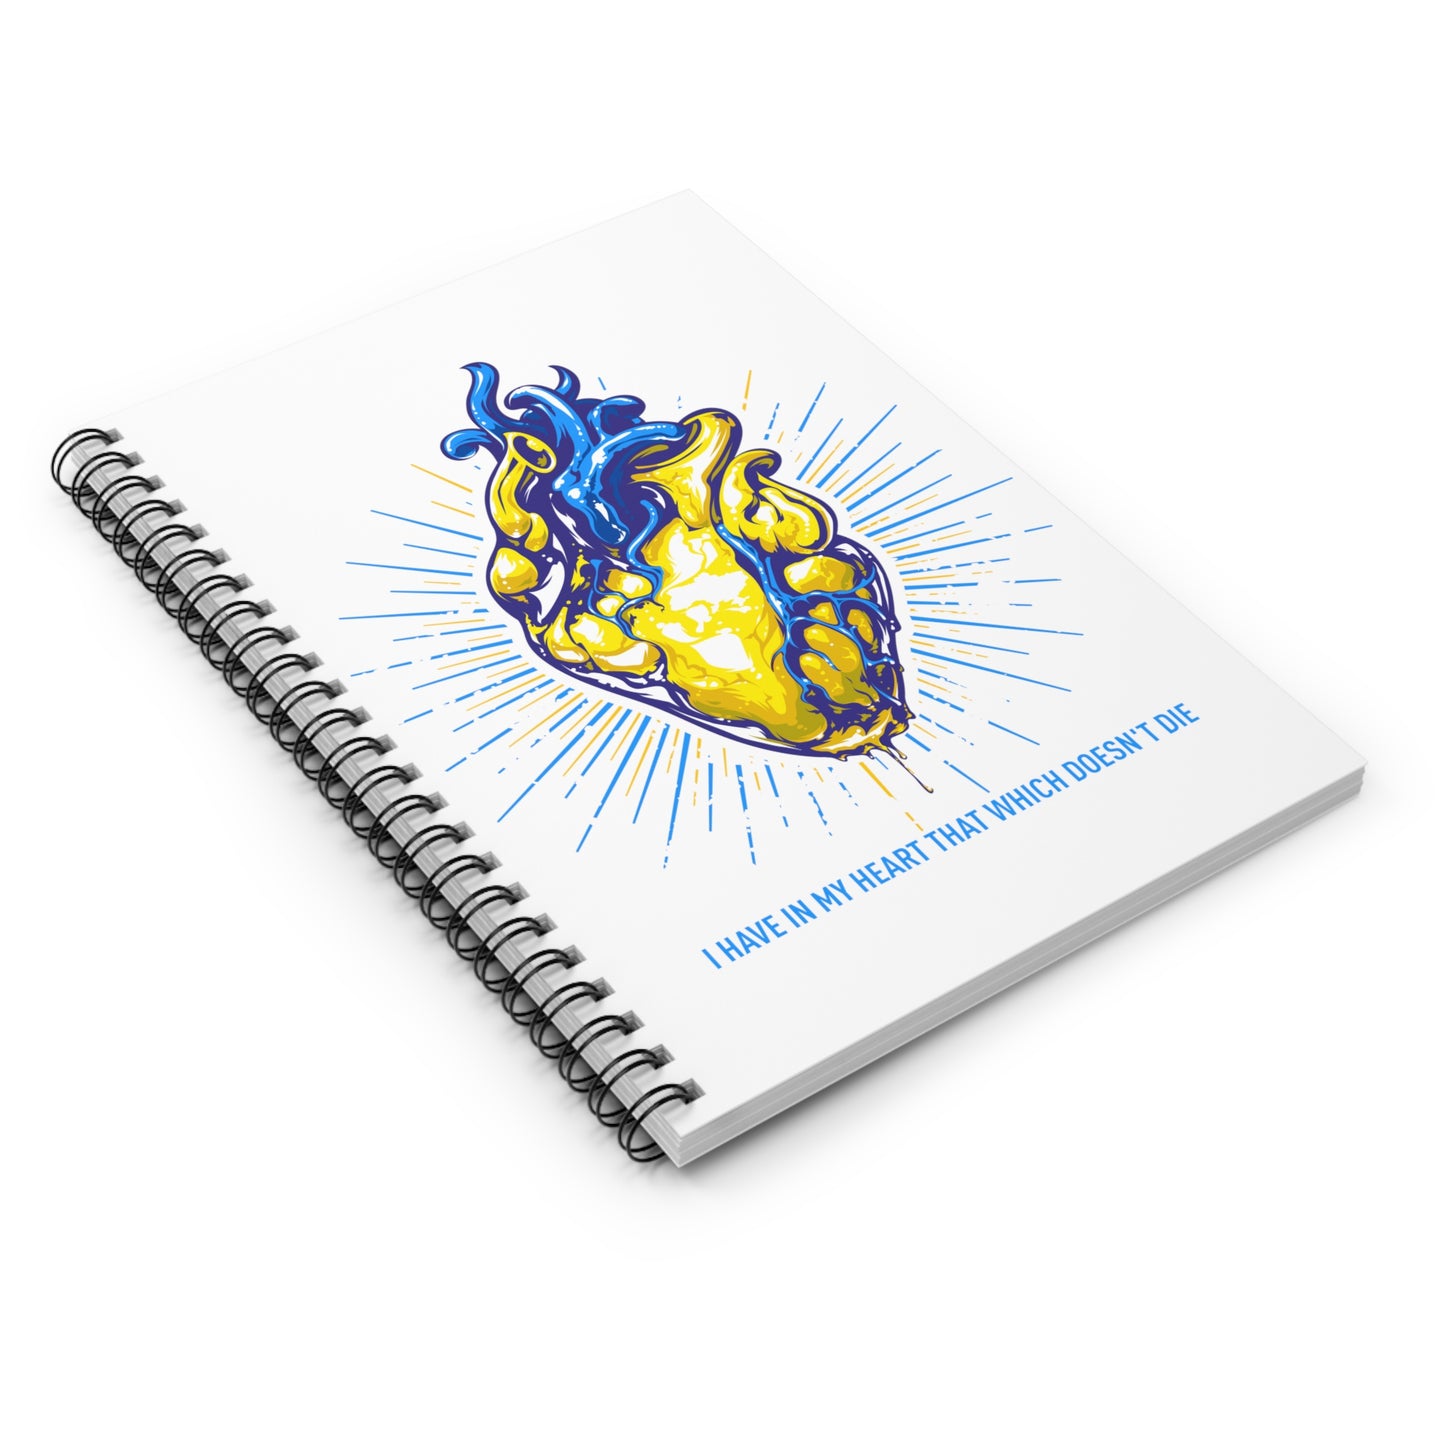 'HEART' Spiral Notebook - Ruled Line